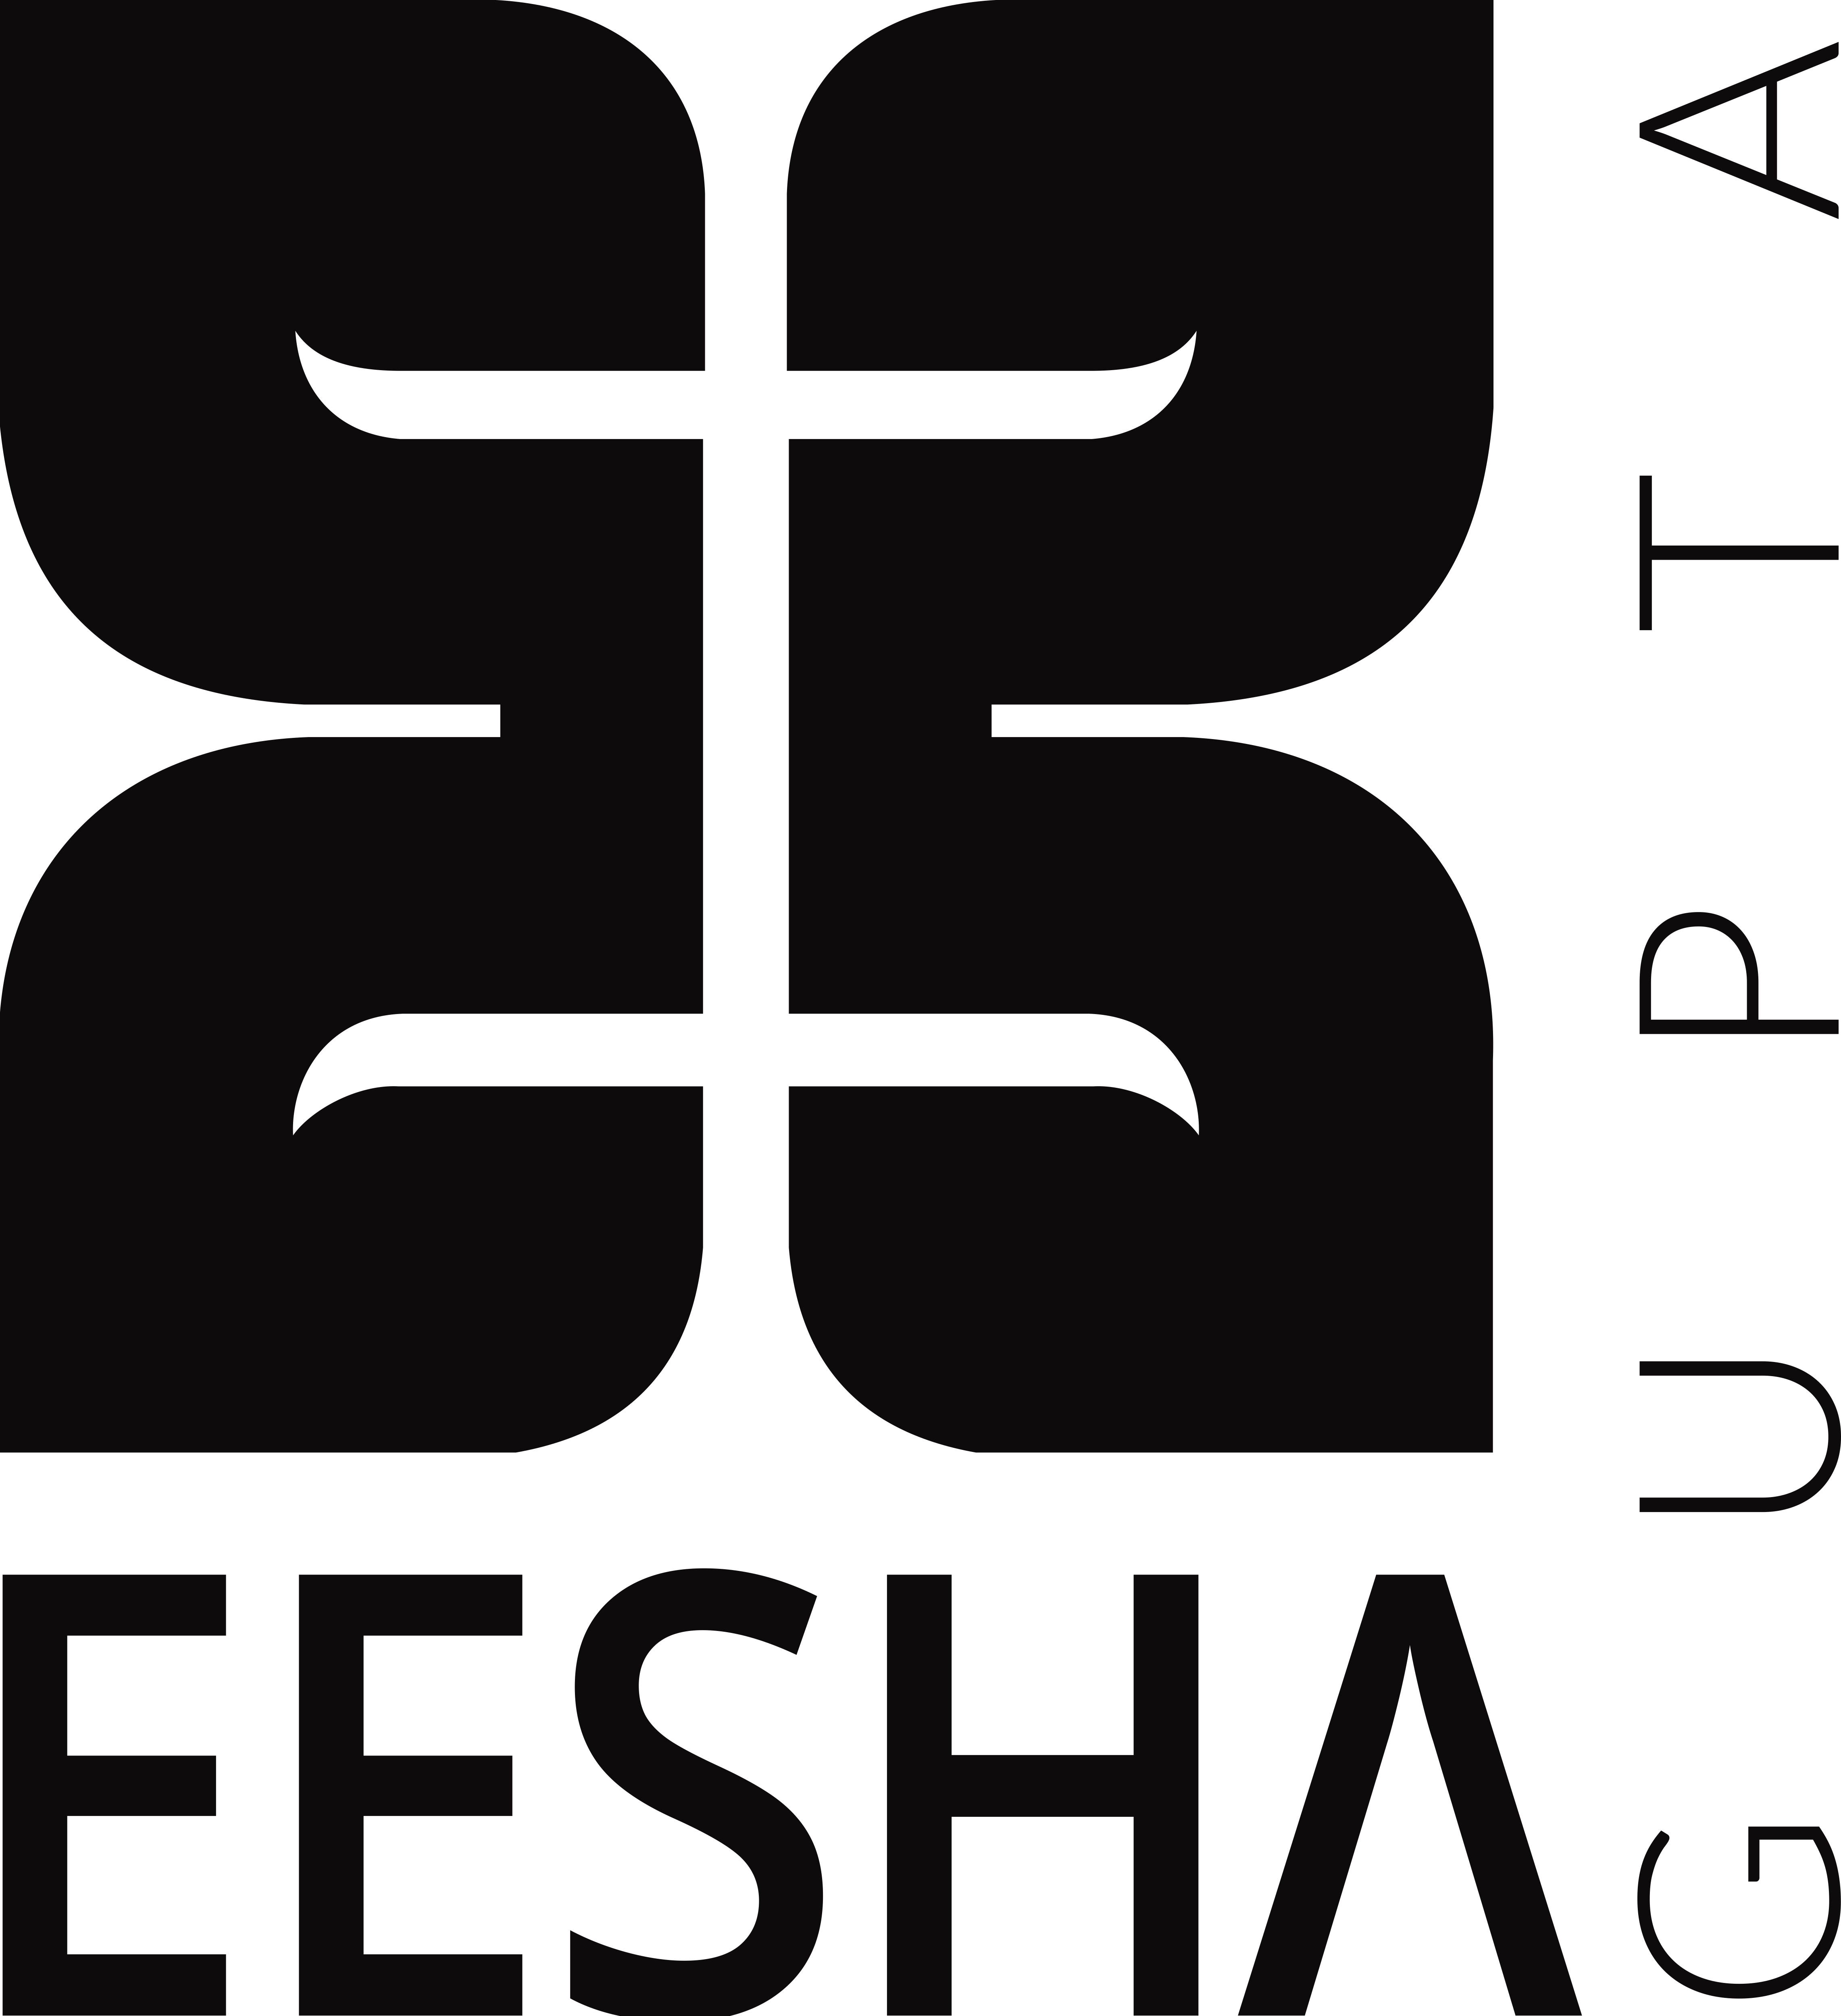 Business logo of Eesha gupta studio